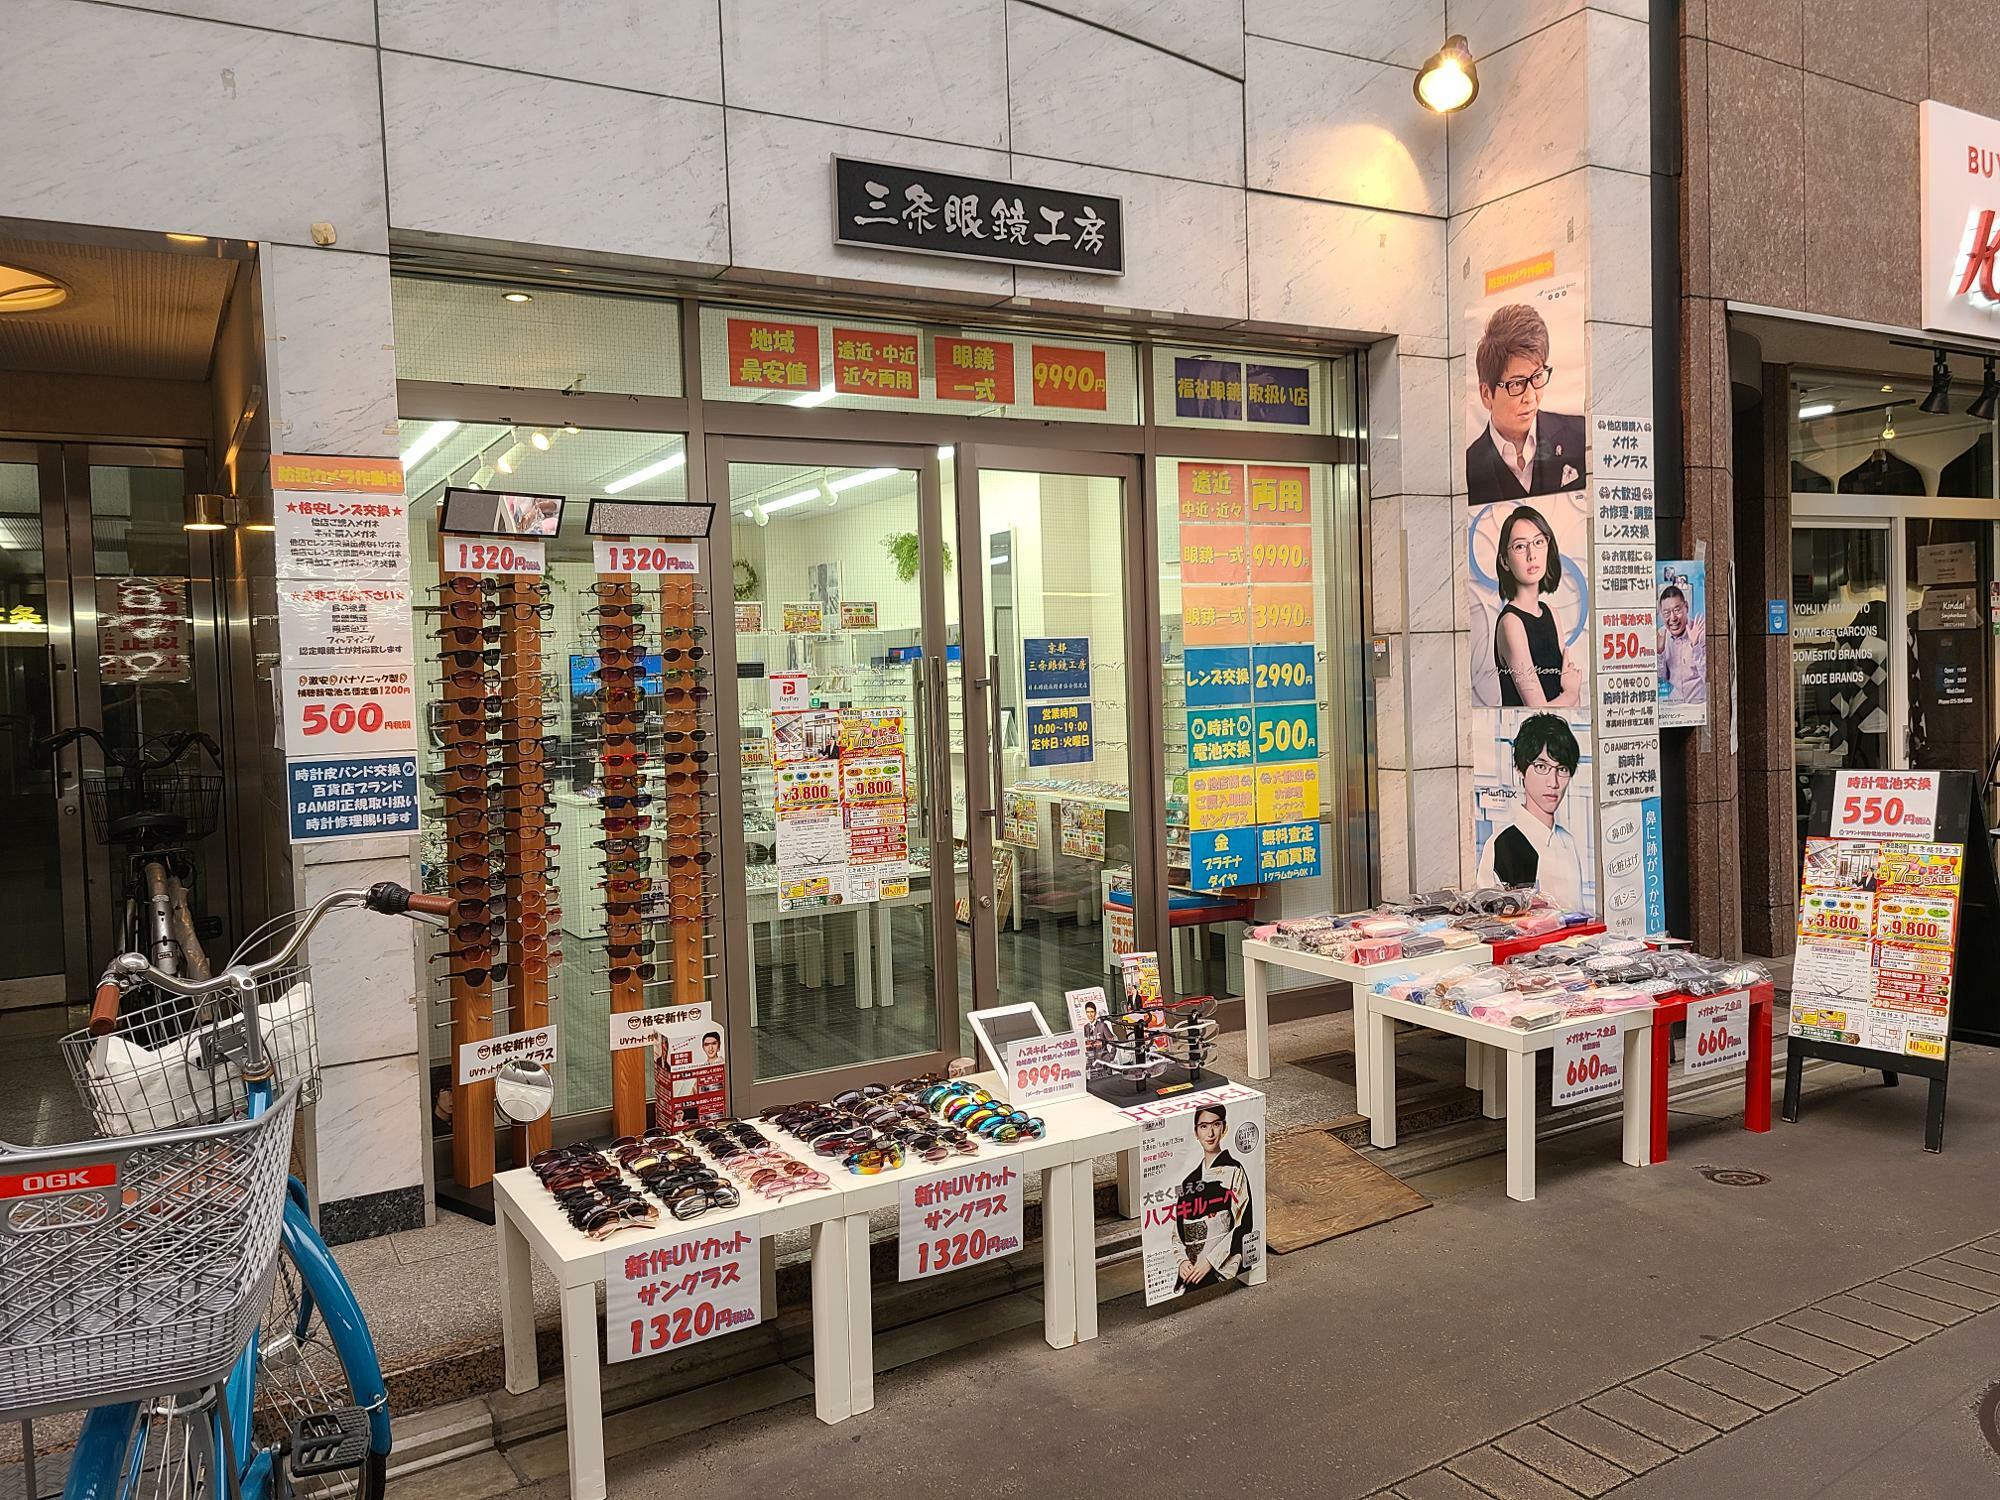 京都三条会商店街で営業を続けてきた、京都三条眼鏡工房